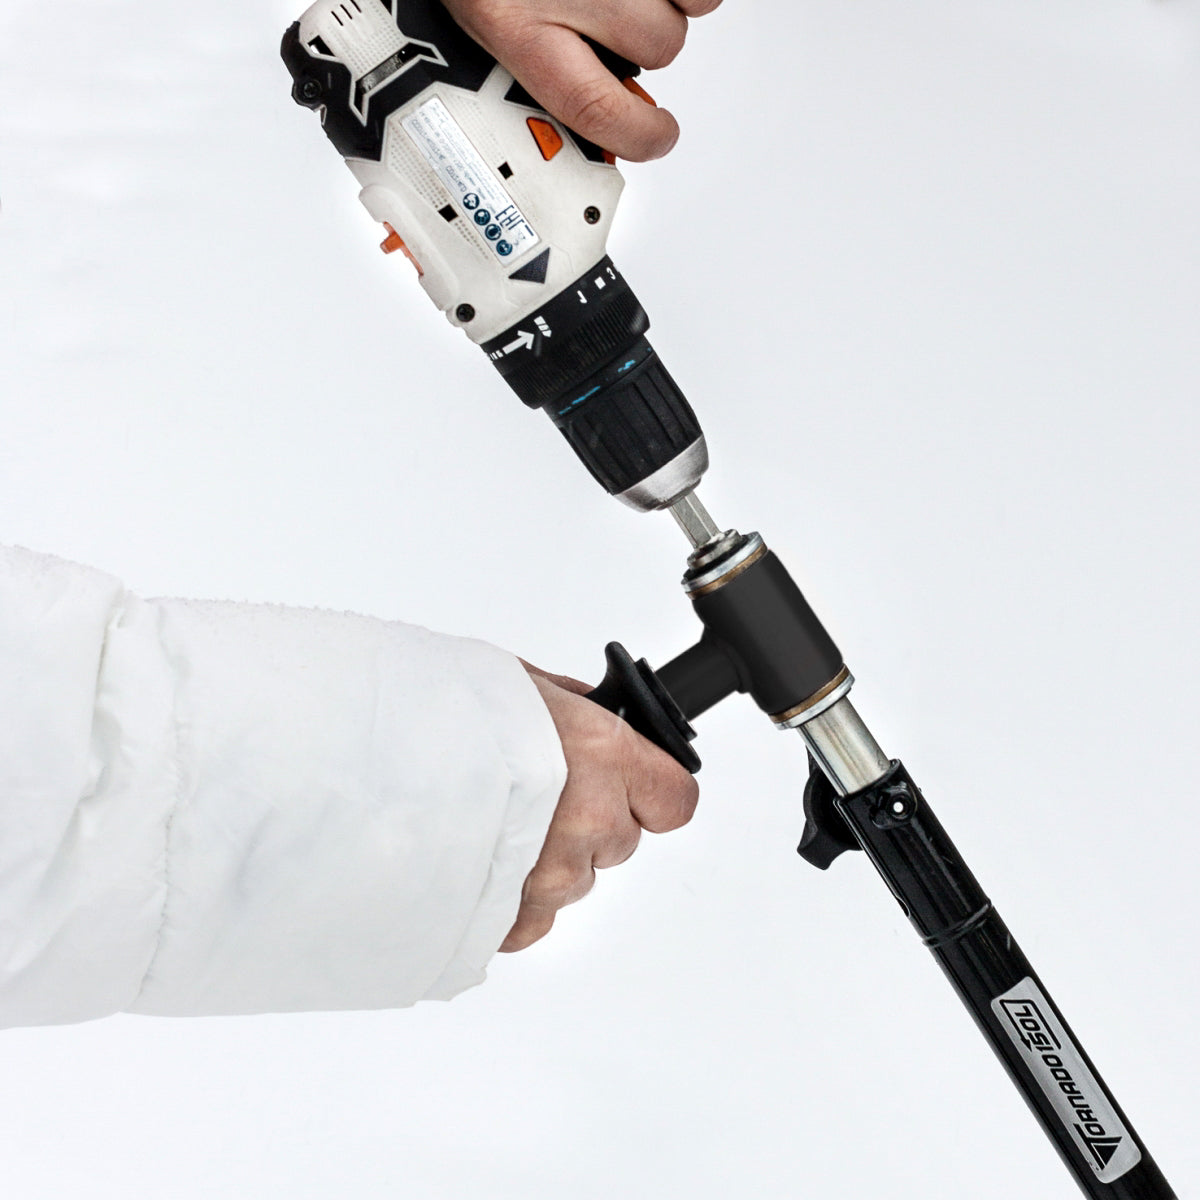 ICEBERG Premium Ice Auger Bit for Cordless Drill - 5 inch Diameter